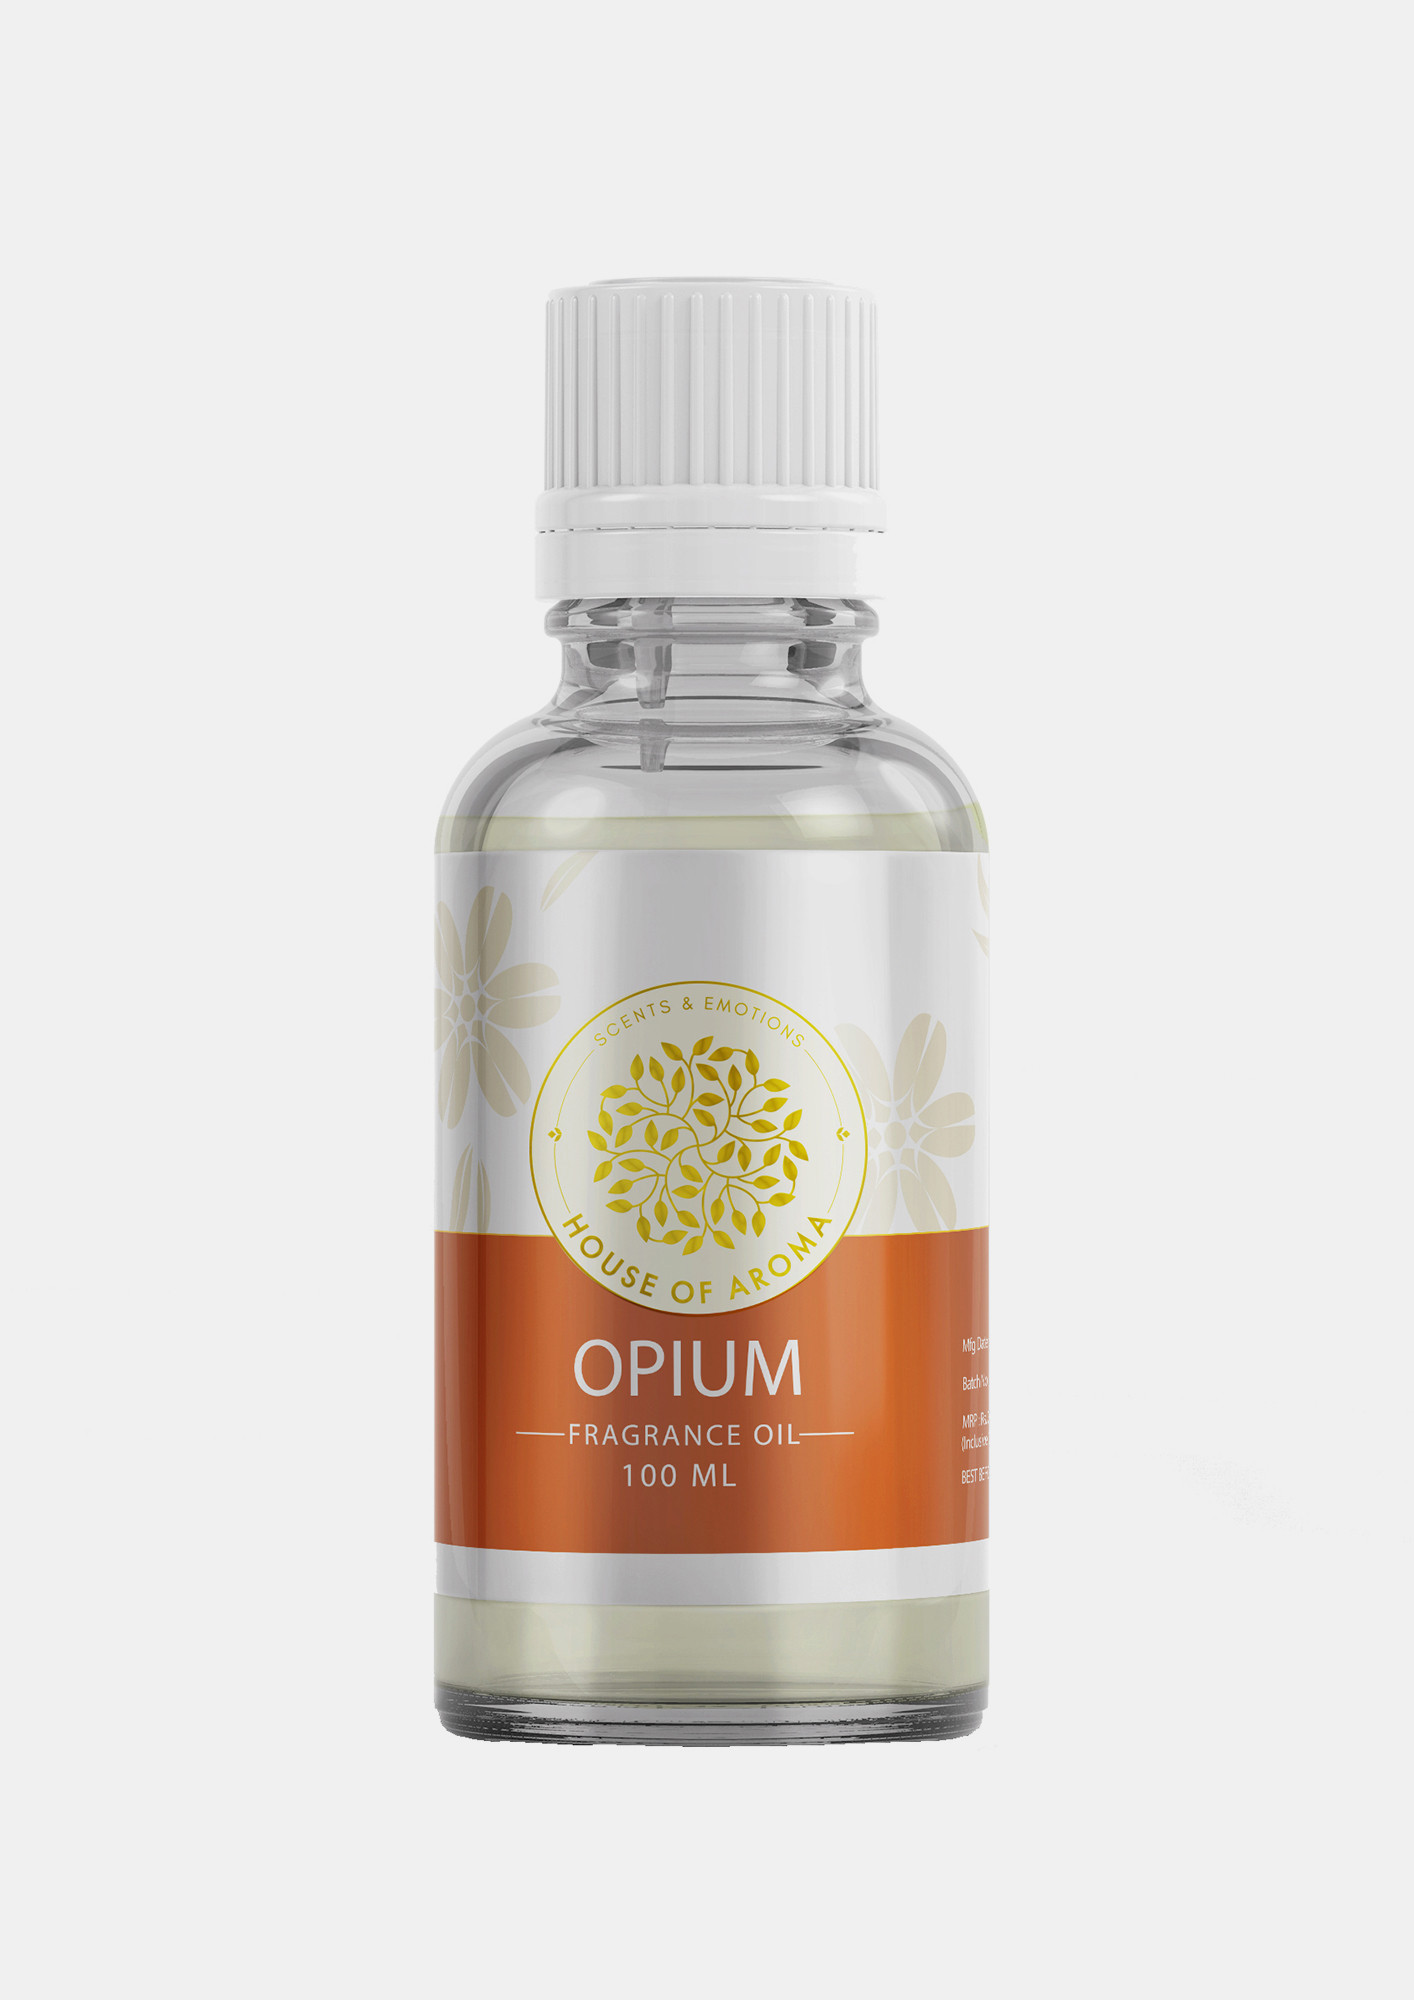 House Of Aroma Opium Fragrance Oil-100 Ml